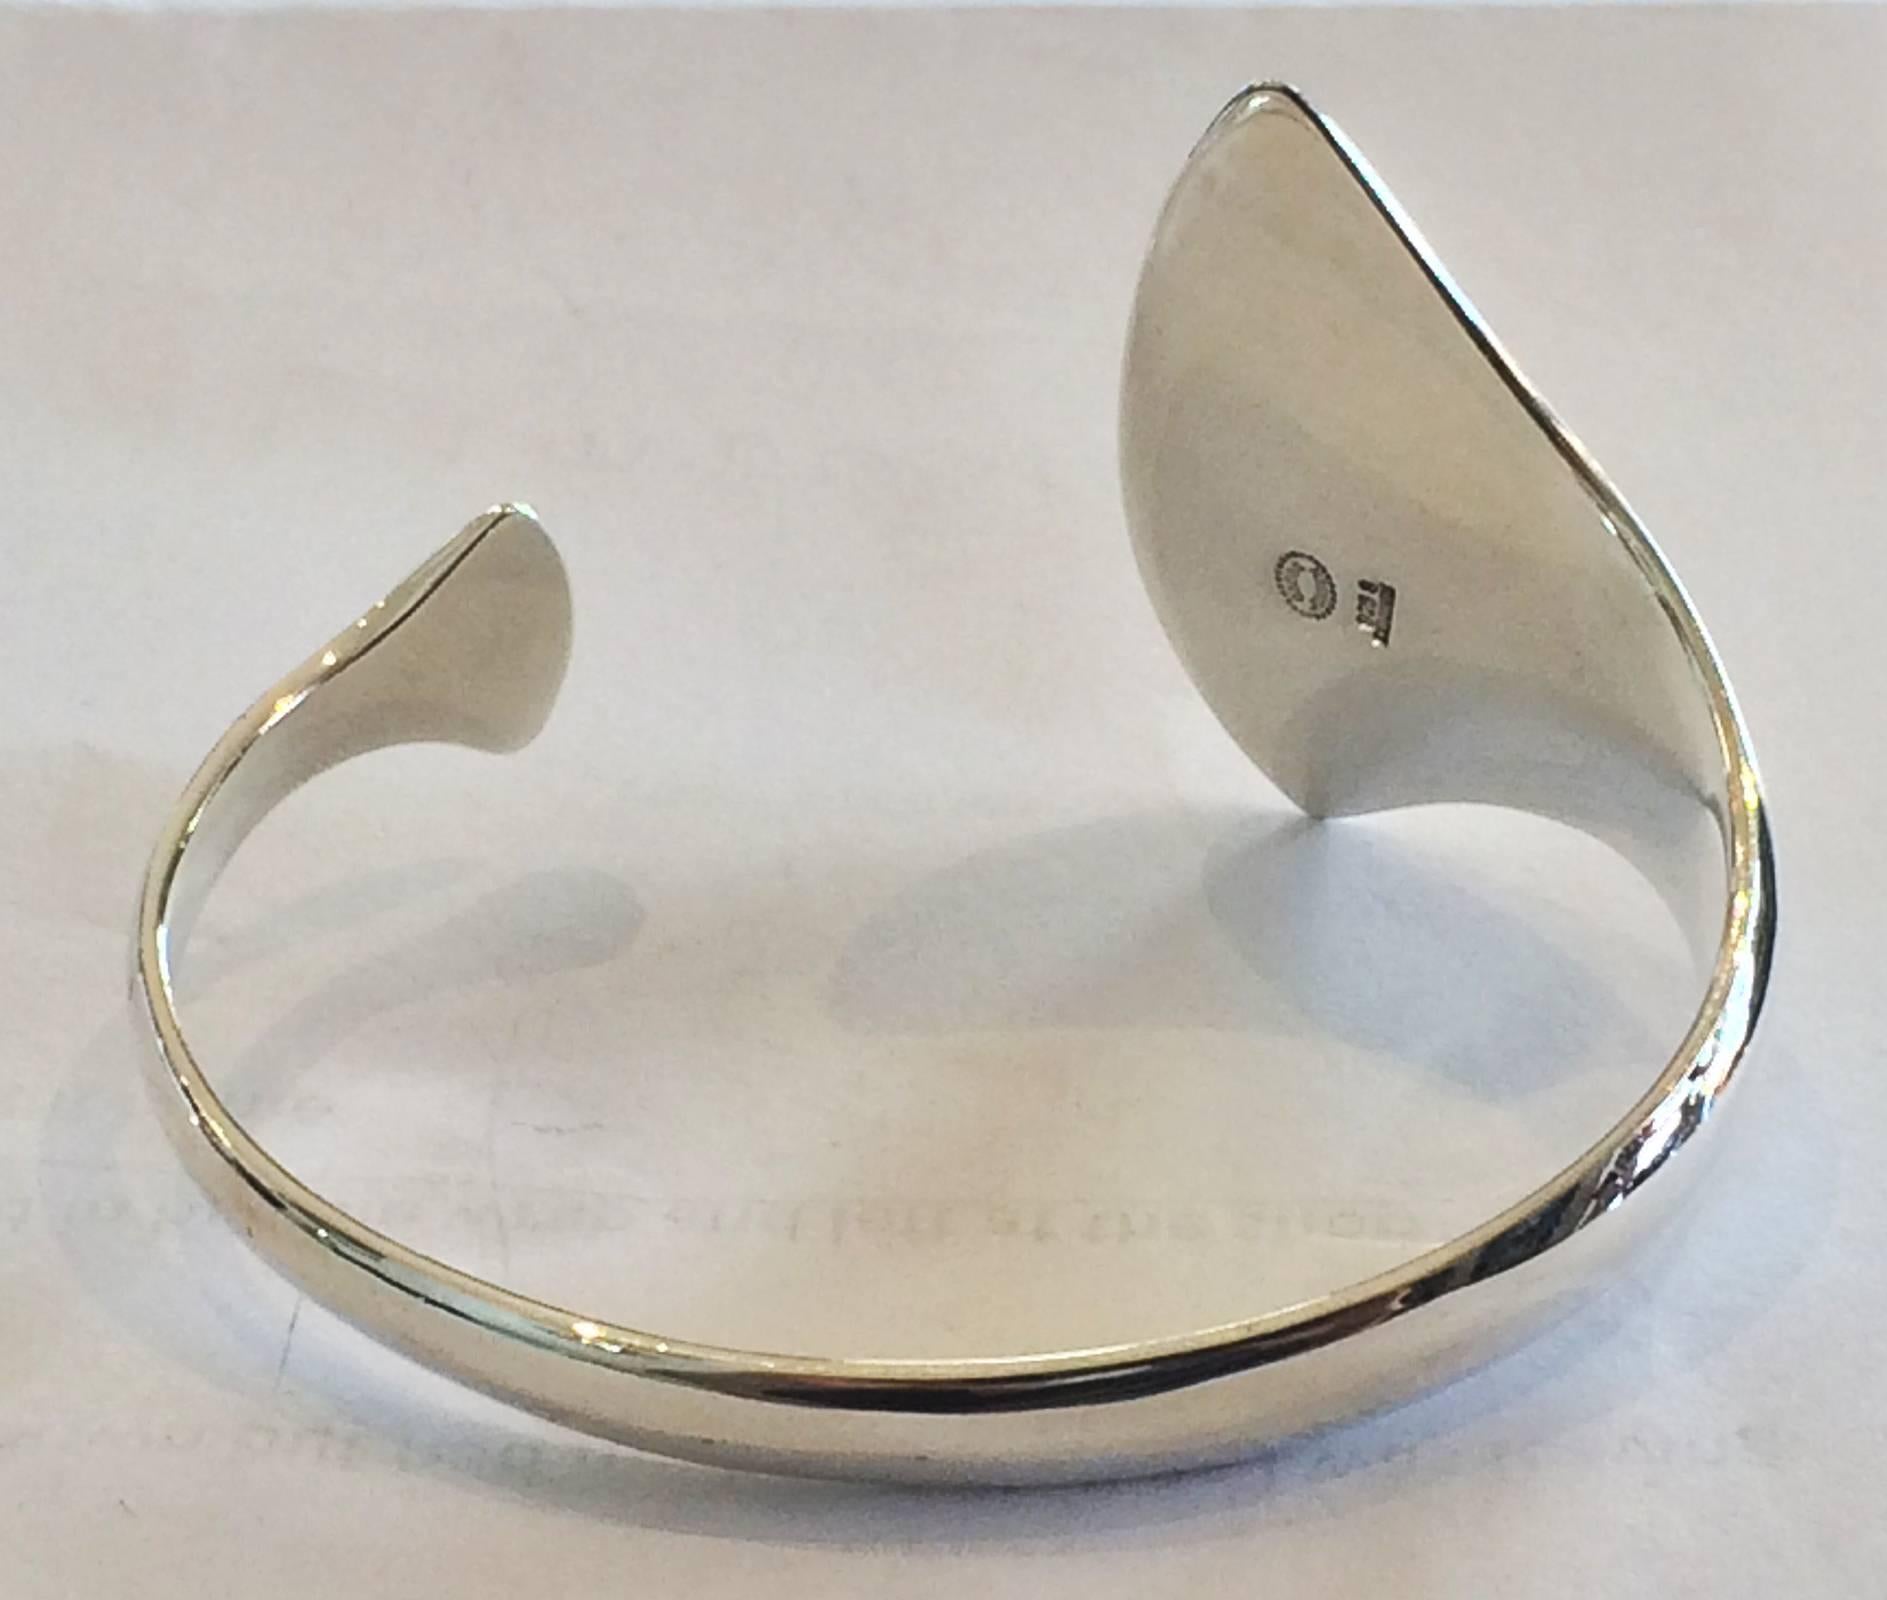 An unusual Georg Jensen cuff bracelet design by Hans Hansen and Bent Gabrielsen  in the 1960s/1970s era.  Design No. 214, marked with Post 1945 marks, Denmark 925s.  Size: diameter 6,0 cm / W max. 4,2 cm